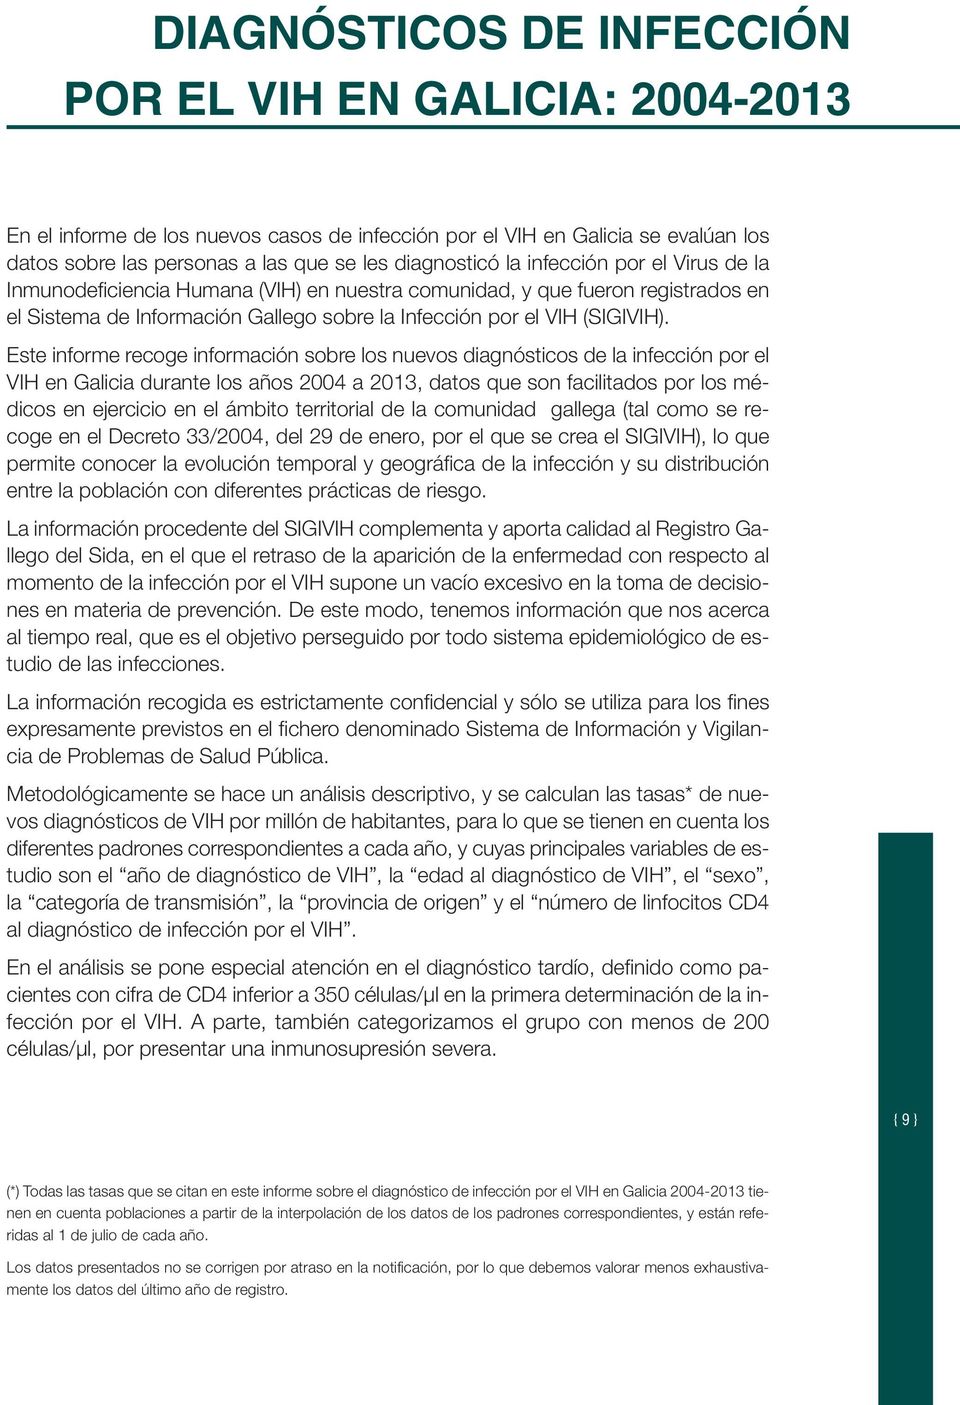 Este informe recoge información sobre los nuevos diagnósticos de la infección por el VIH en Galicia durante los años 2004 a 2013, datos que son facilitados por los médicos en ejercicio en el ámbito